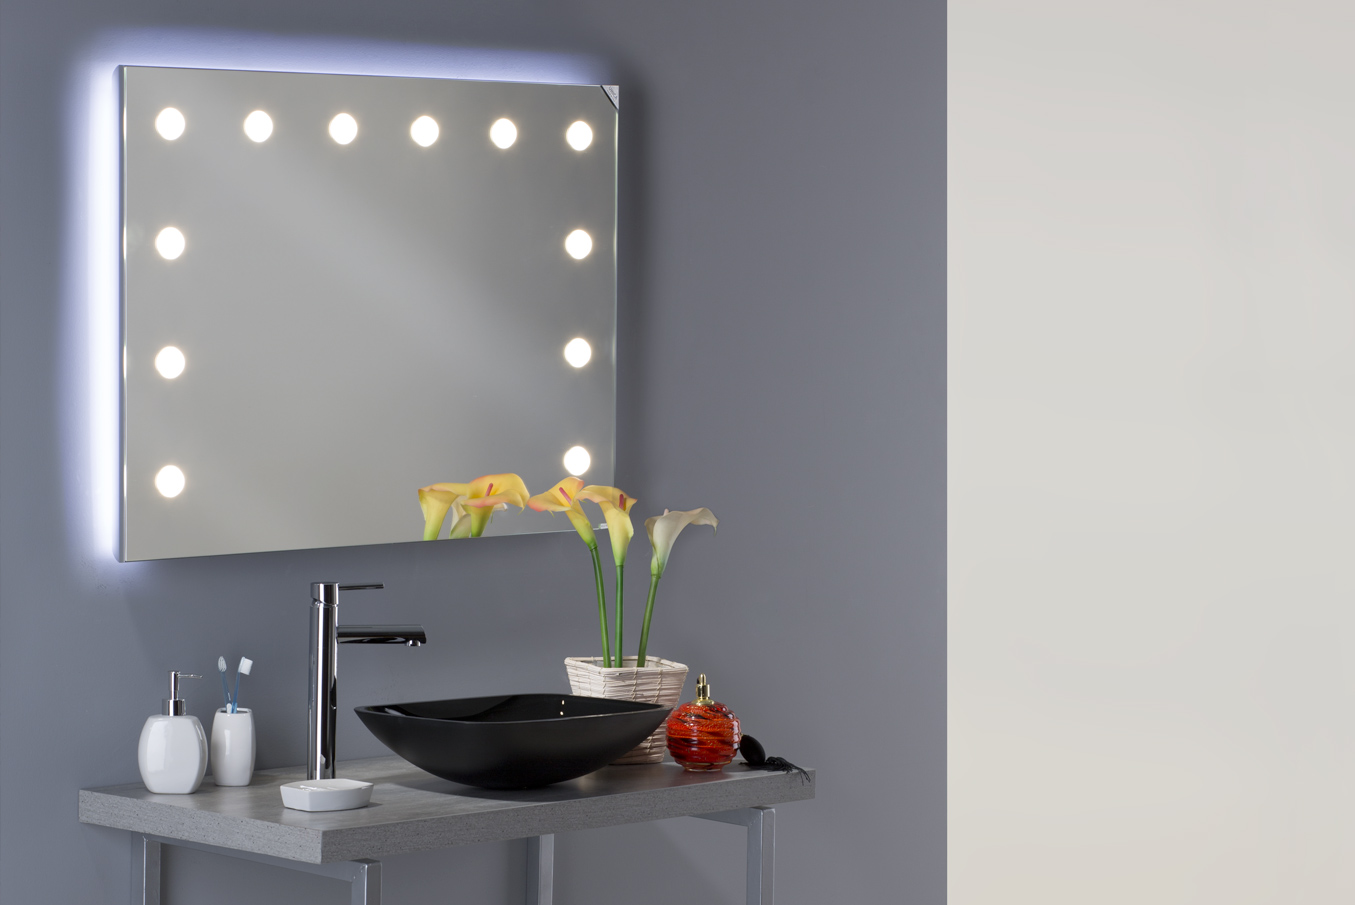 specchio rettangolare design grande con luci integrate regolabili per bagno stile minimal, i migliori specchi da bagno